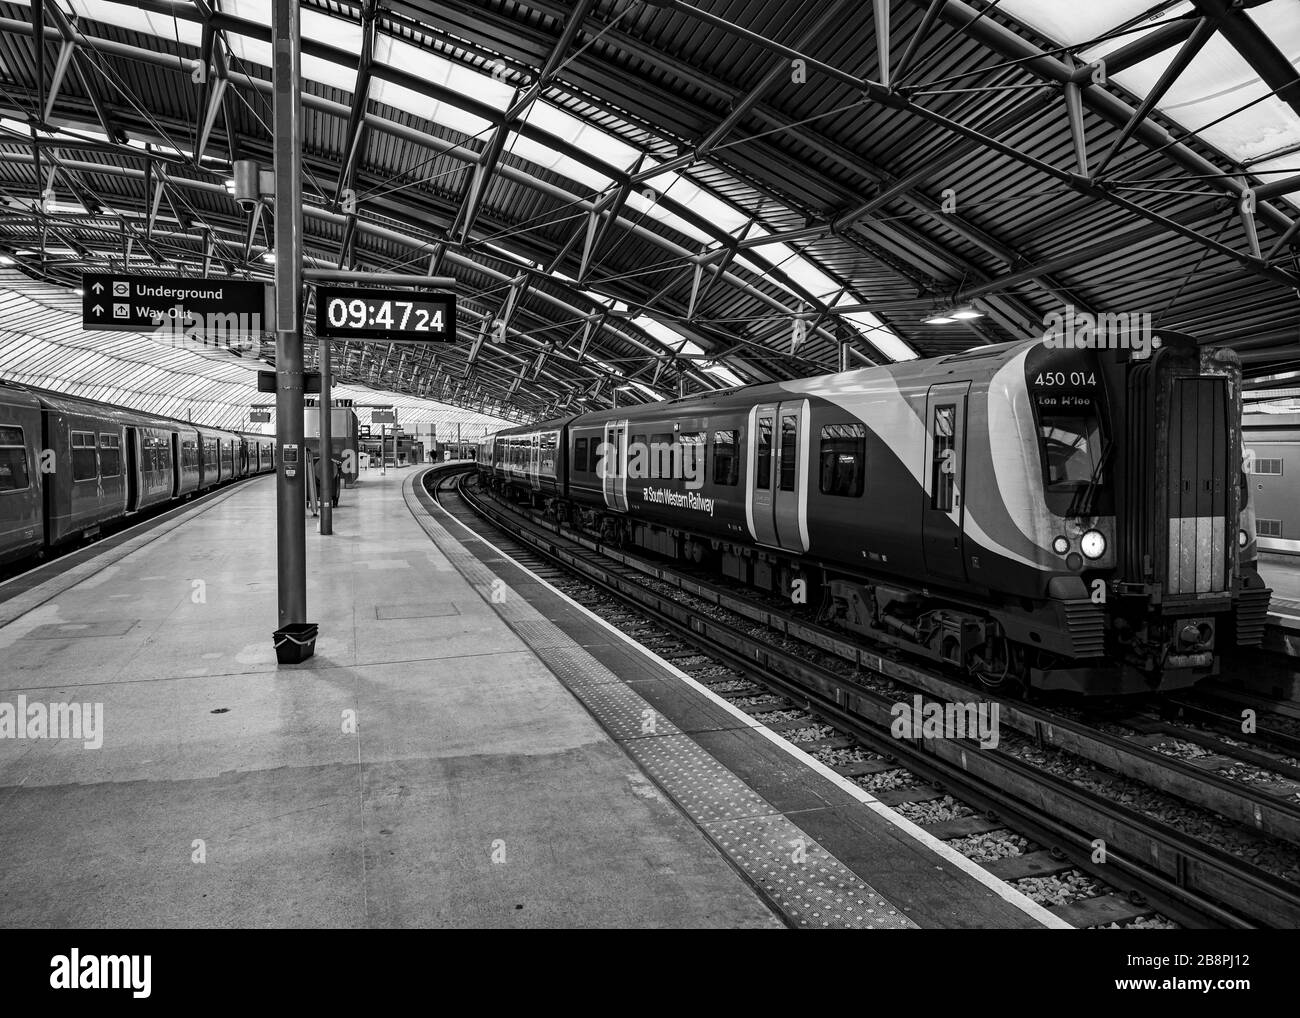 London Shutdown - Covid-19 Coronavirus Lockdown - Empty Waterloo Platform Stock Photo